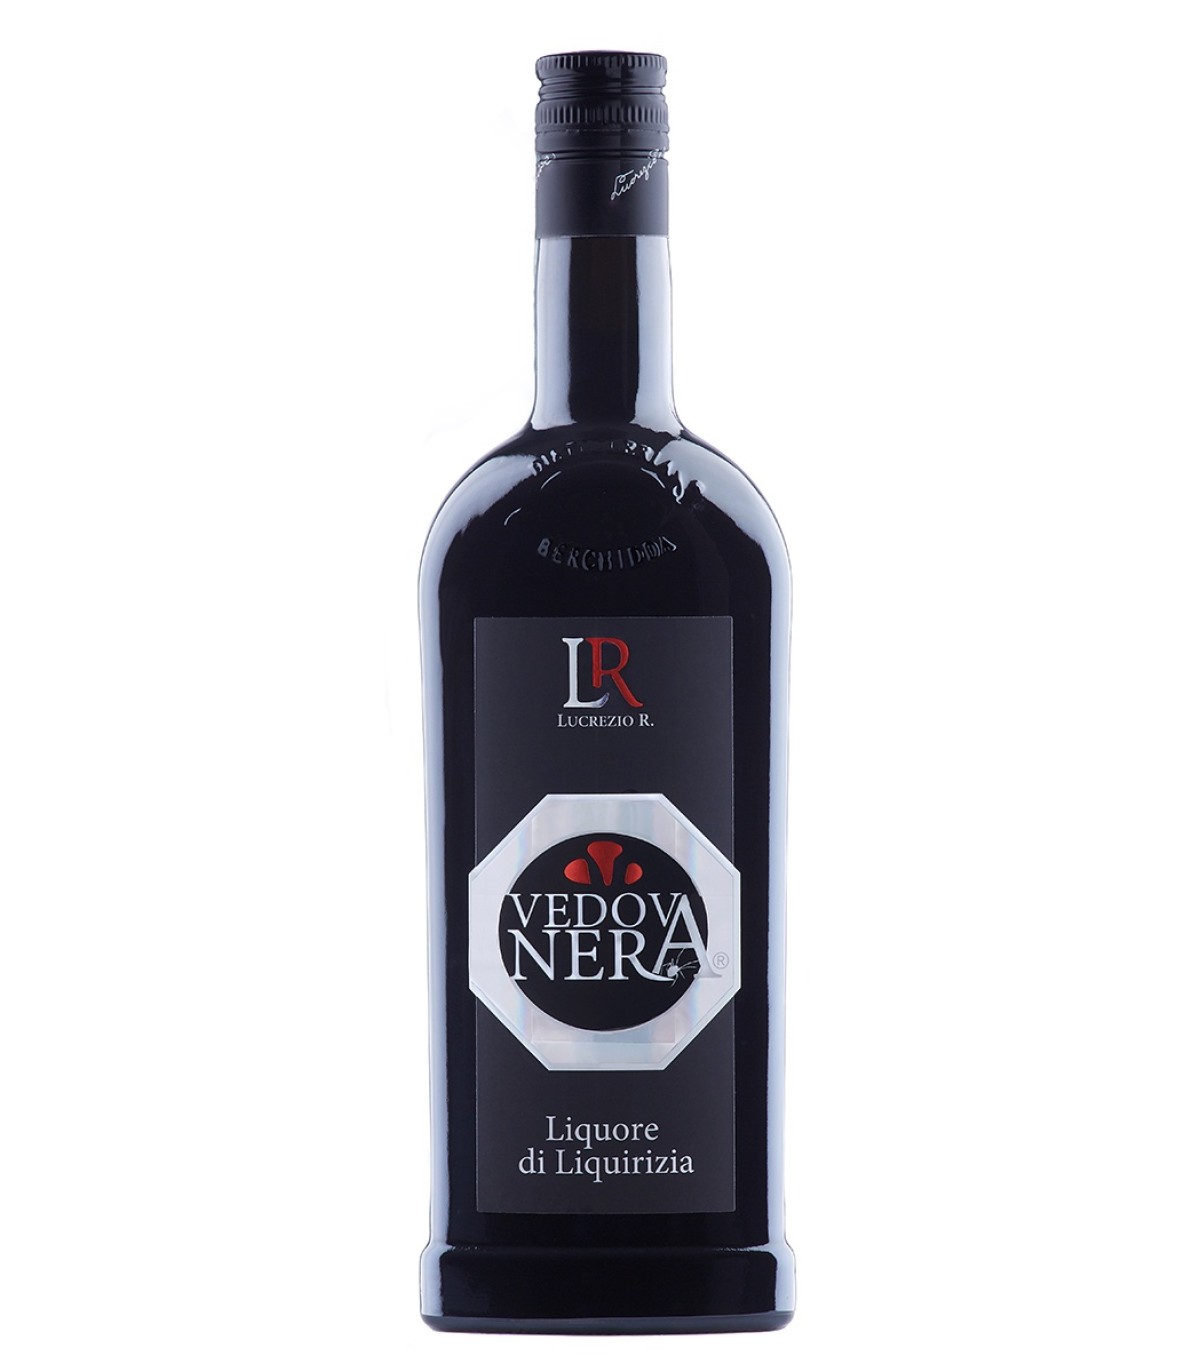 Vedova Nera Liquore di Liquirizia 70cl - Lucrezio R